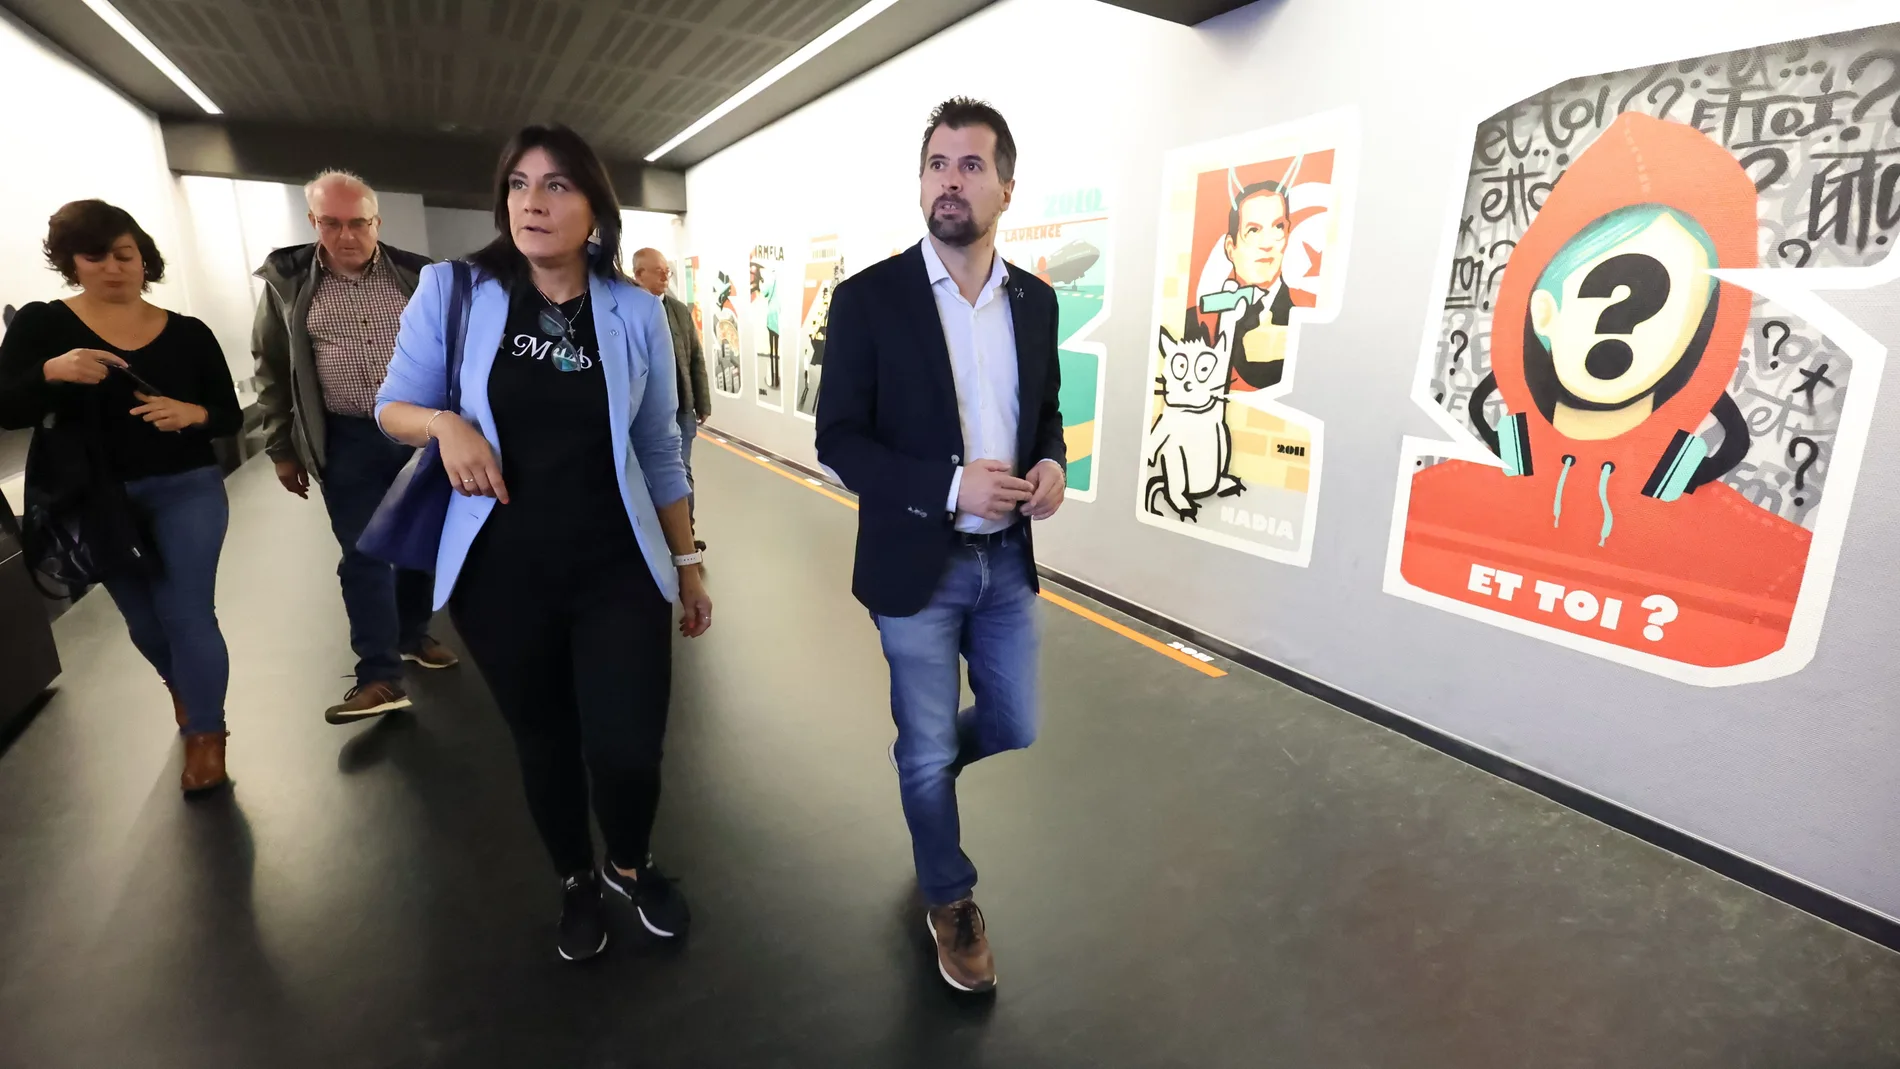 El secretario regional del PSOE, Luis Tudanca, visita el Centro de Interpretación "Territorios de la memoria" en Lieja (Bélgica) junto a la secretaria de Organización, Ana Sánchez